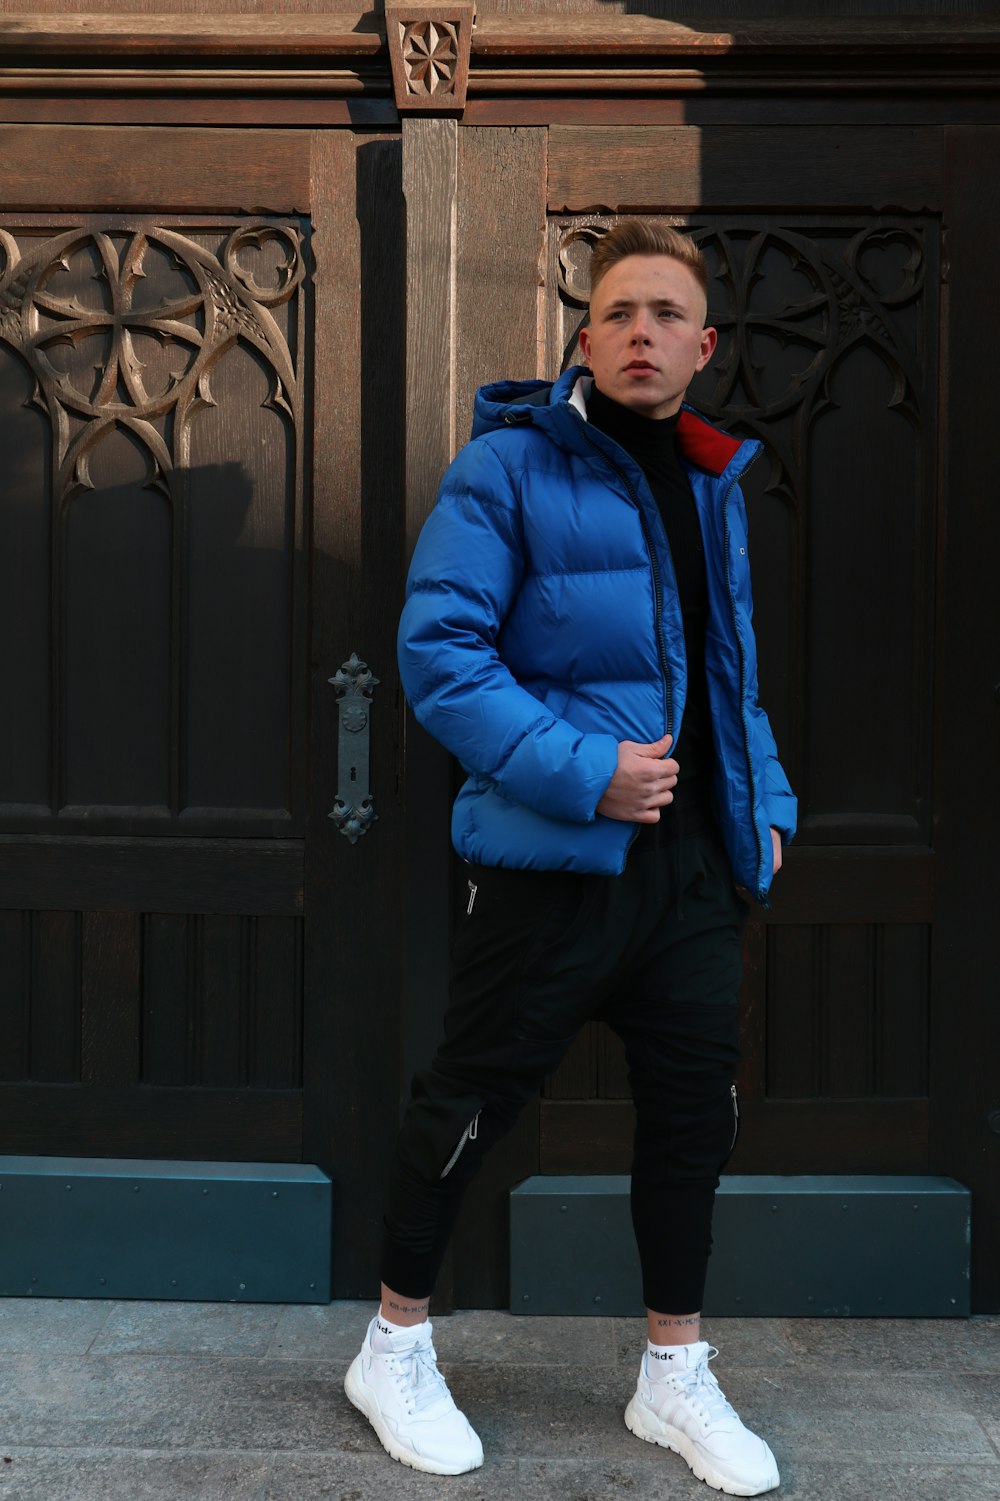 man in blue jacket standing near black wooden door